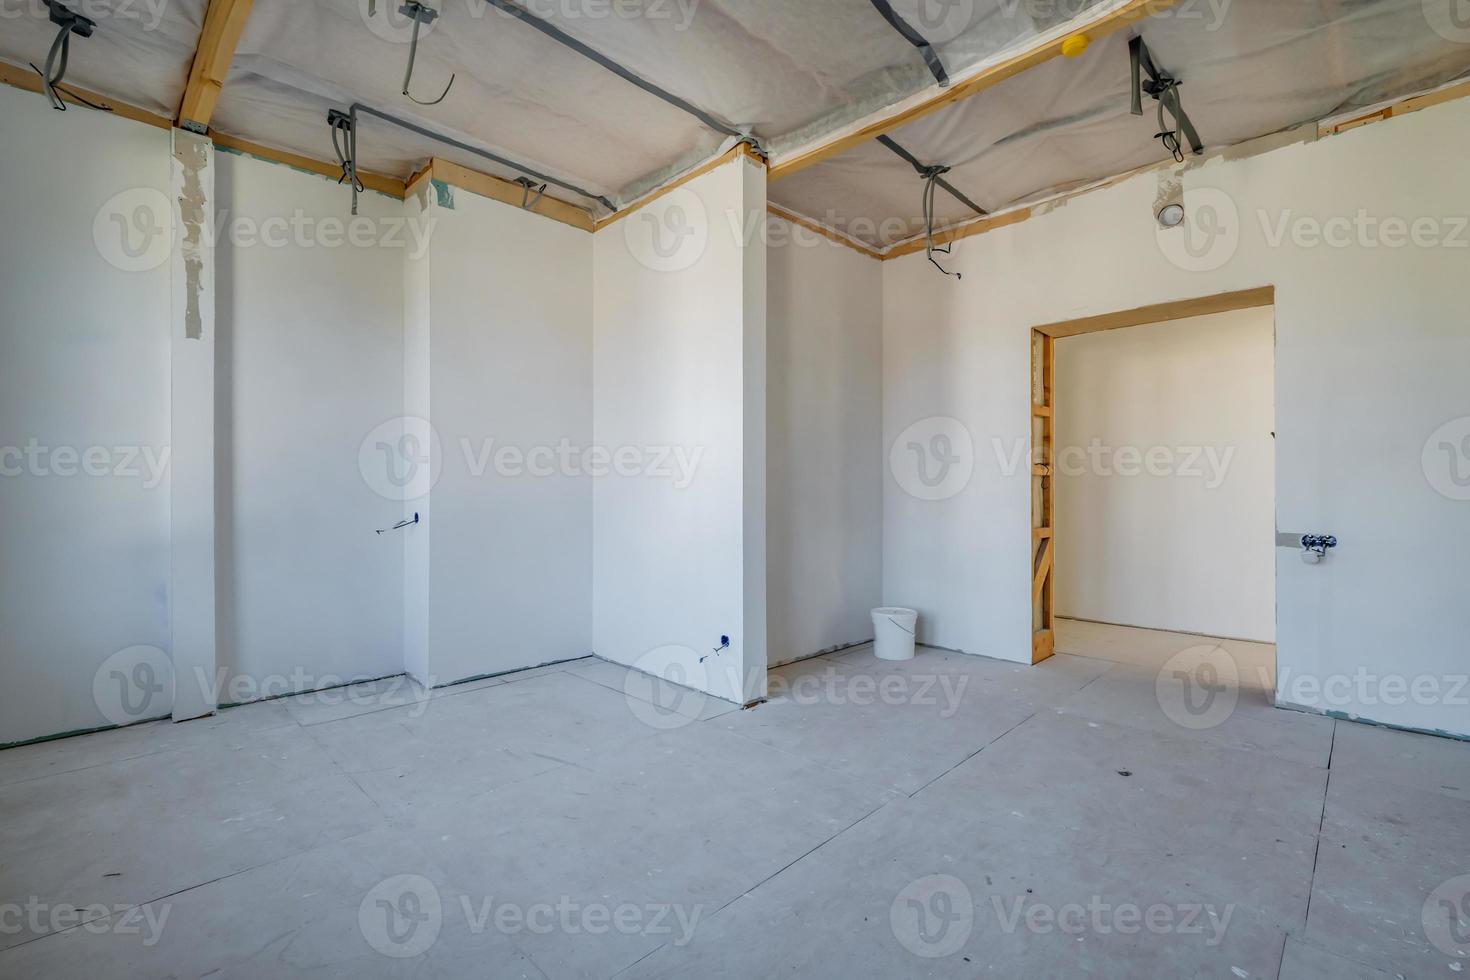 chambre vide non meublée avec un minimum de réparations préparatoires. intérieur aux murs blancs photo